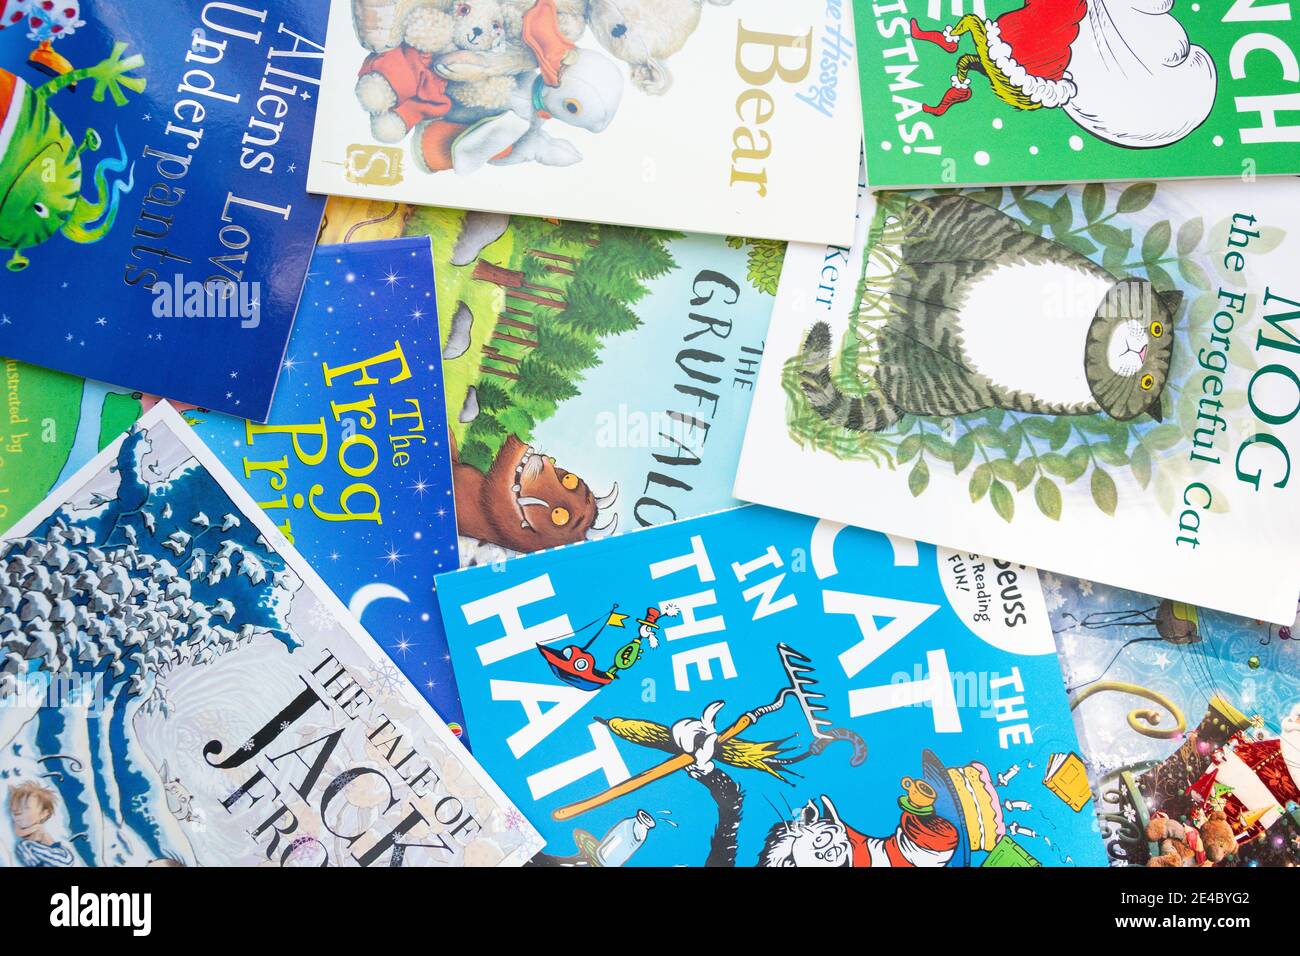 Sélection de livres d'images populaires pour enfants, Stanwell Moor, Surrey, Angleterre, Royaume-Uni Banque D'Images